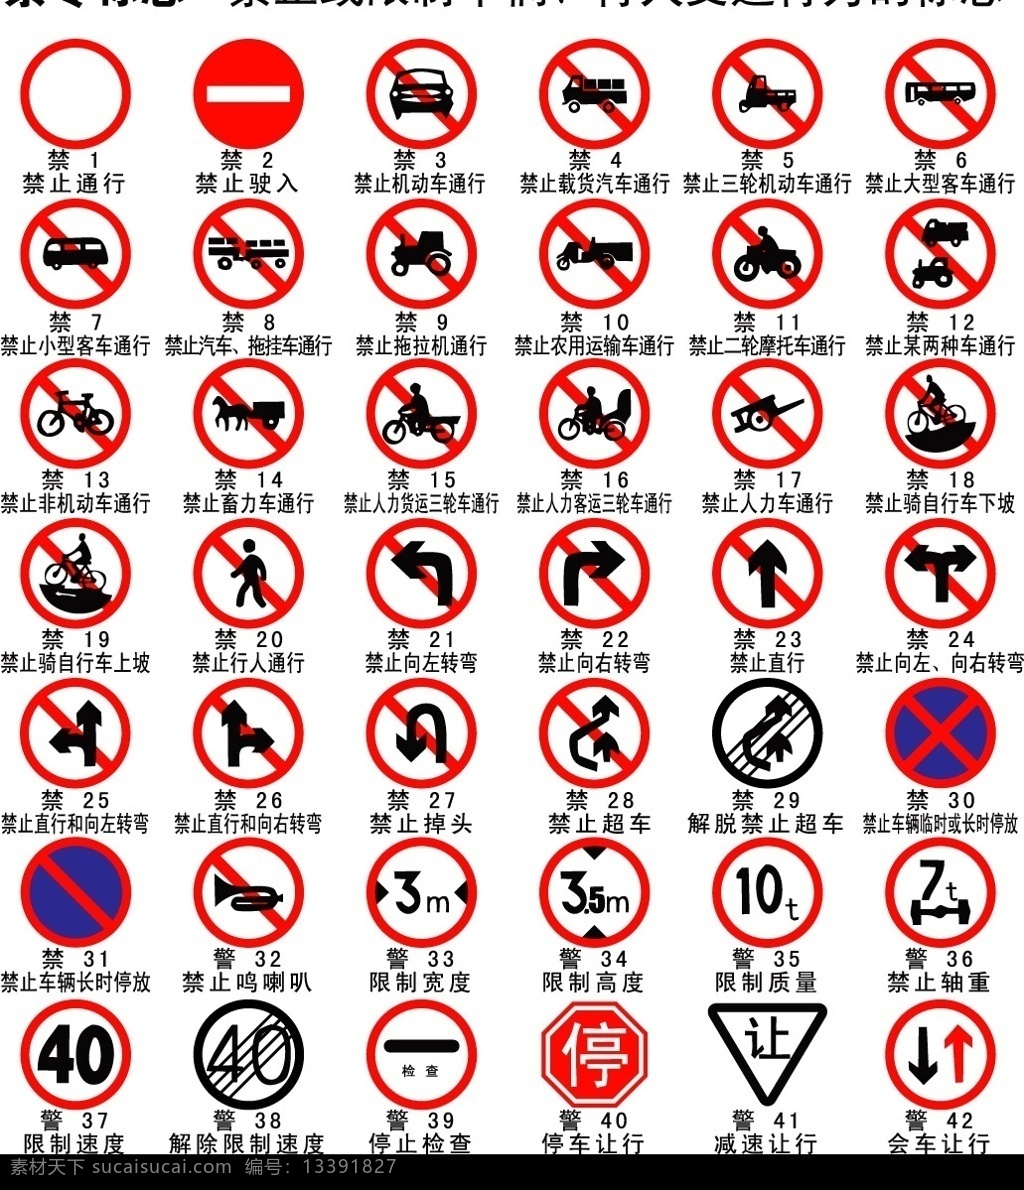 道路交通 标志 禁令 矢量图 格式 标识标志图标 公共标识标志 矢量图库